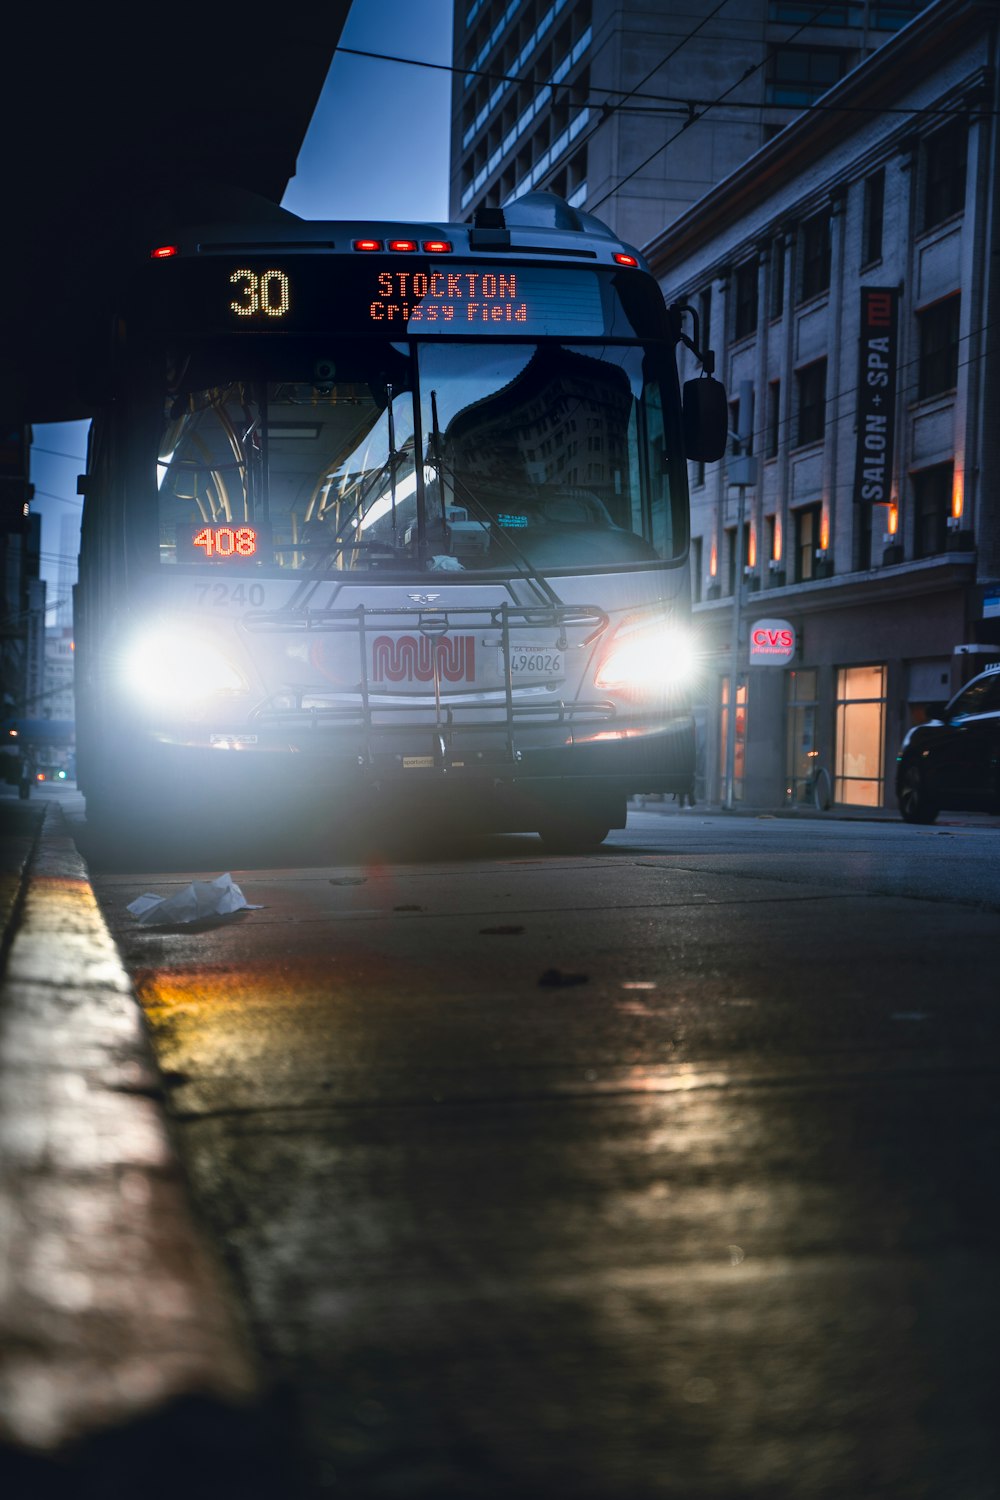 Un autobus che guida lungo una strada di notte